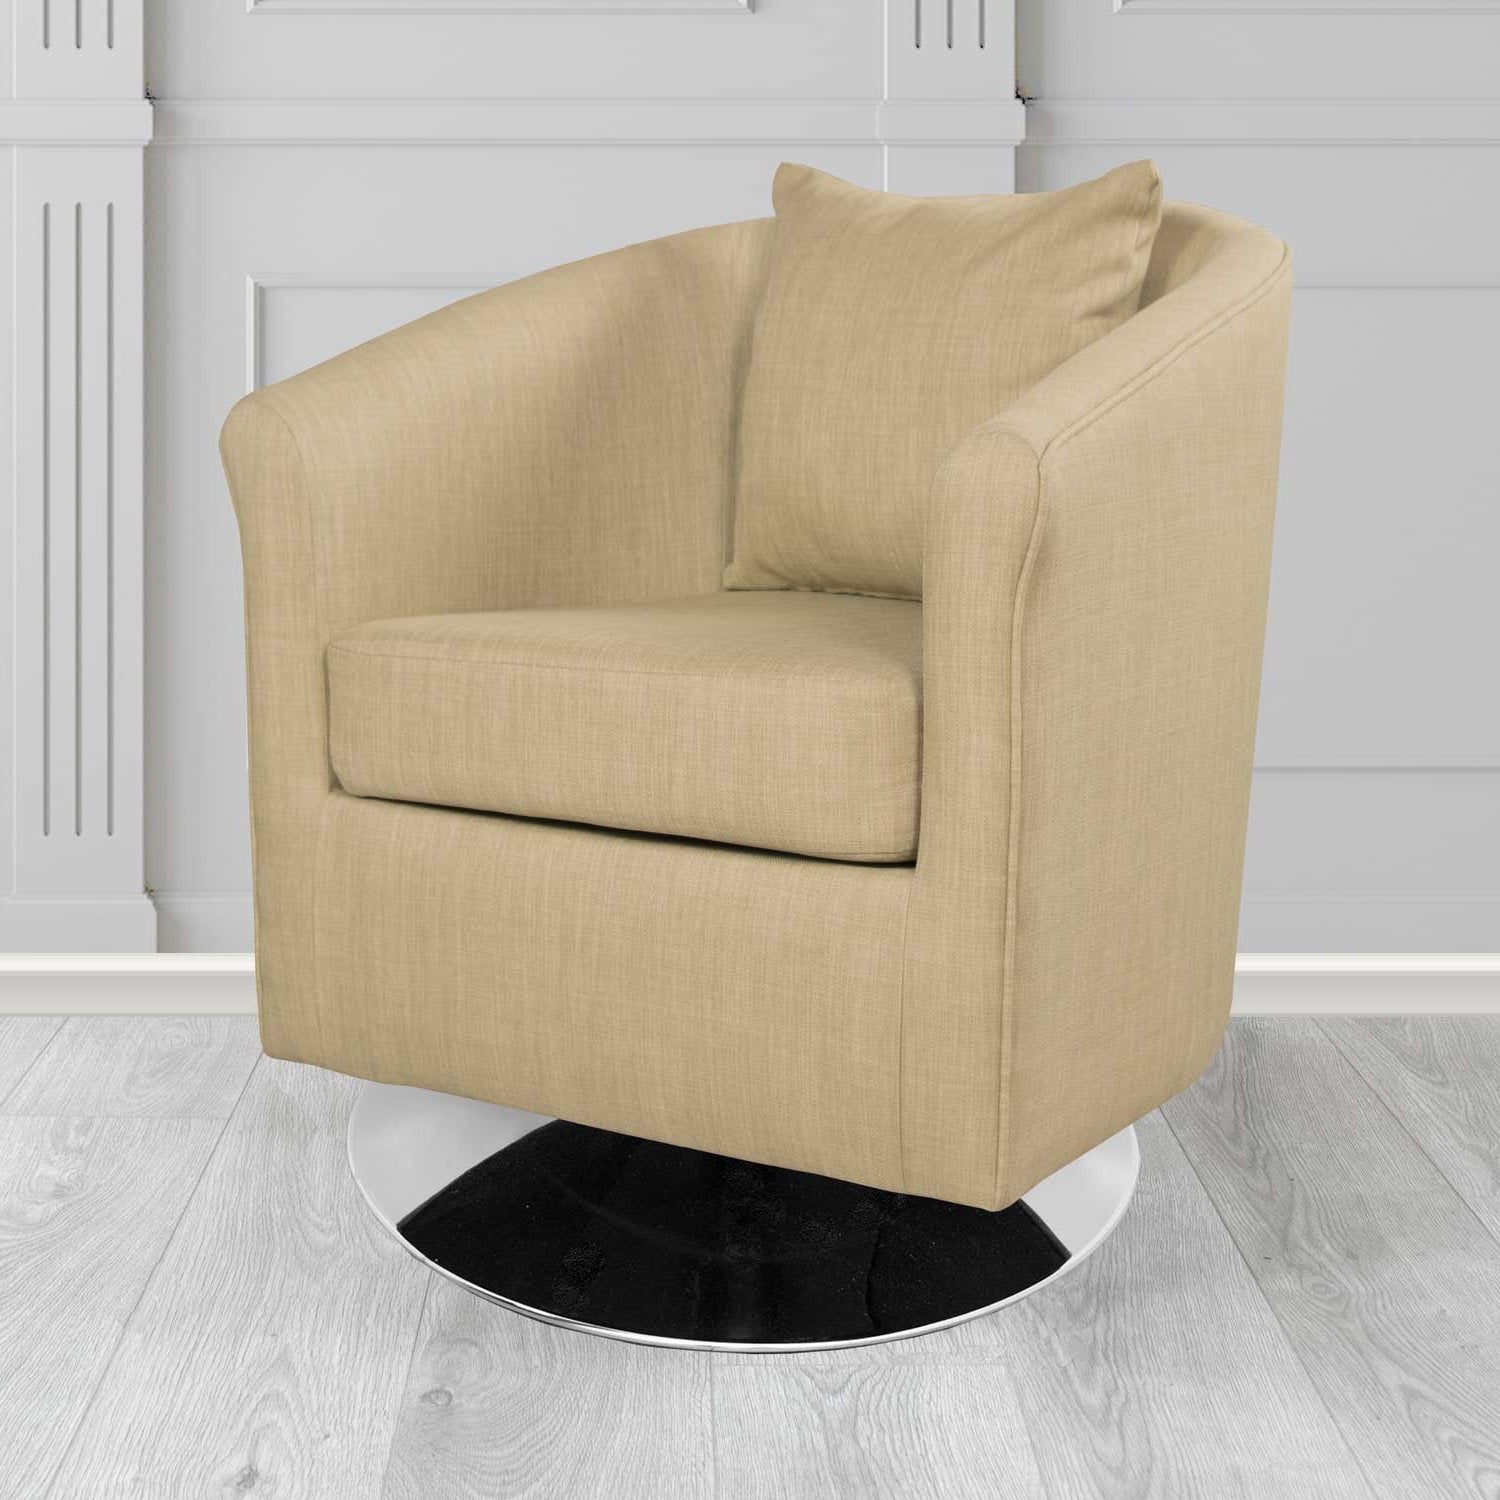 St Tropez Charles Mink Plain Linen Fabric Swivel Tub Chair - The Tub Chair Shop